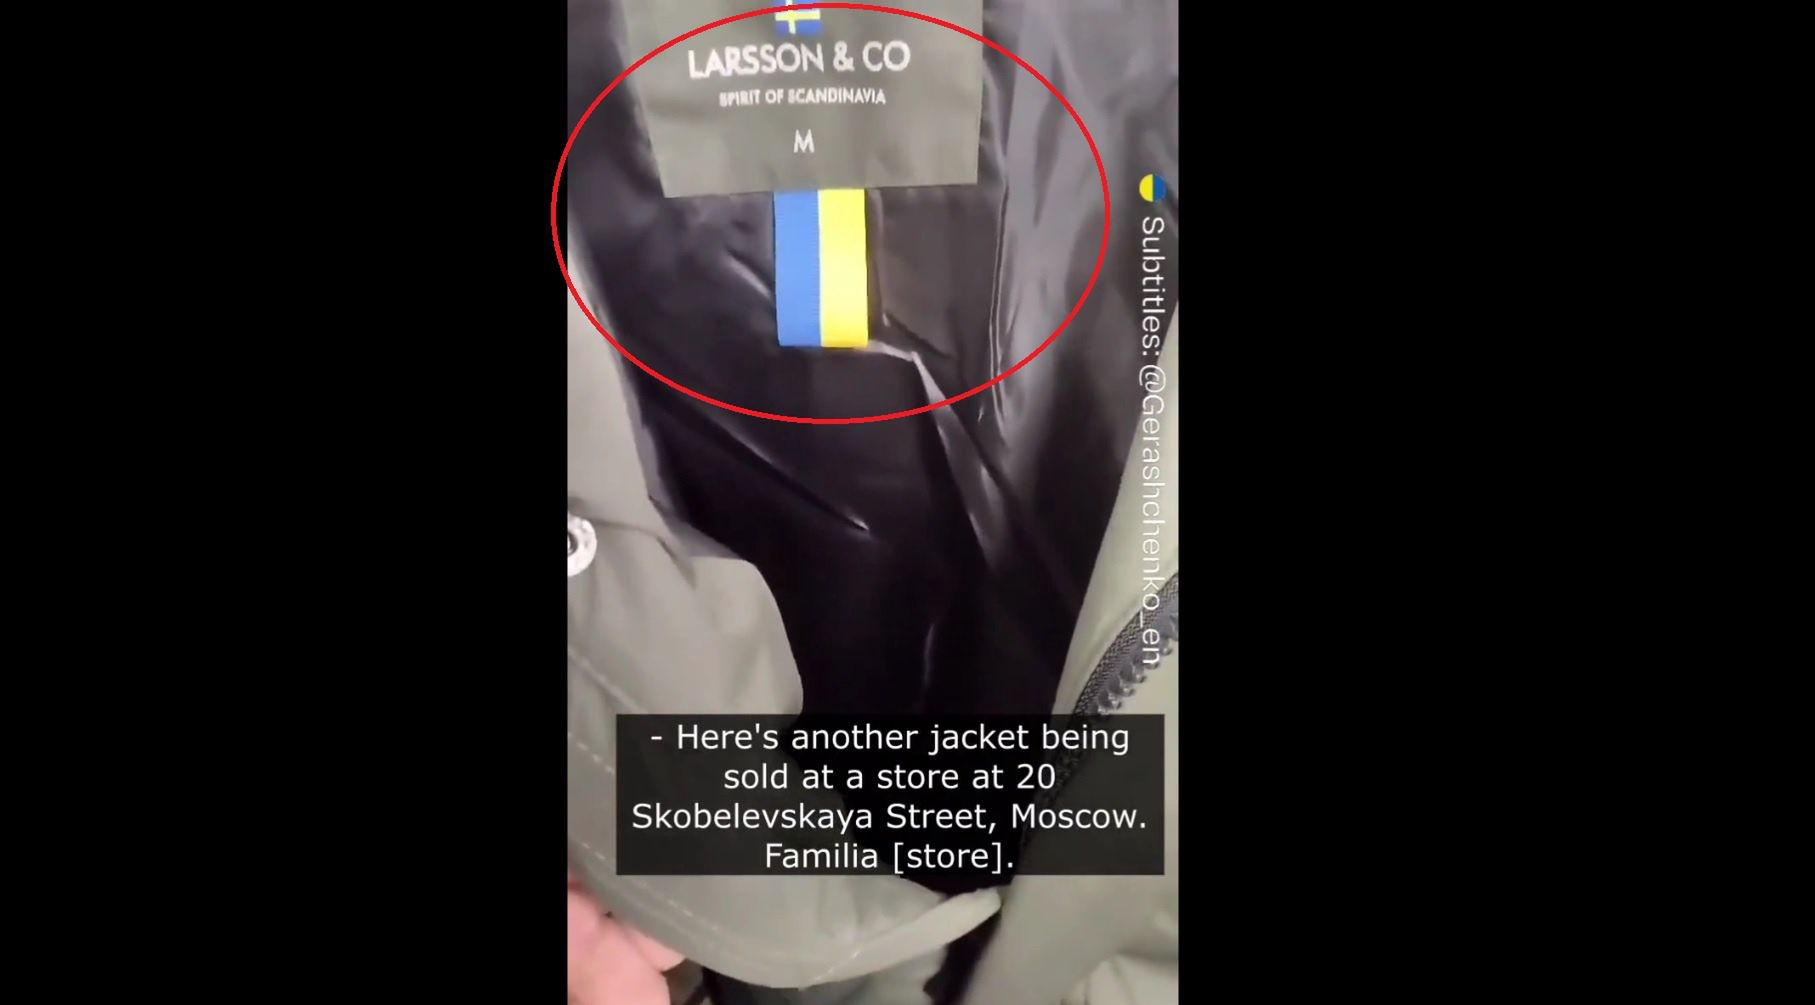 Rosjanie wszędzie widzą ukraińskie rzeczy. W sklepach mylą nawet flagi